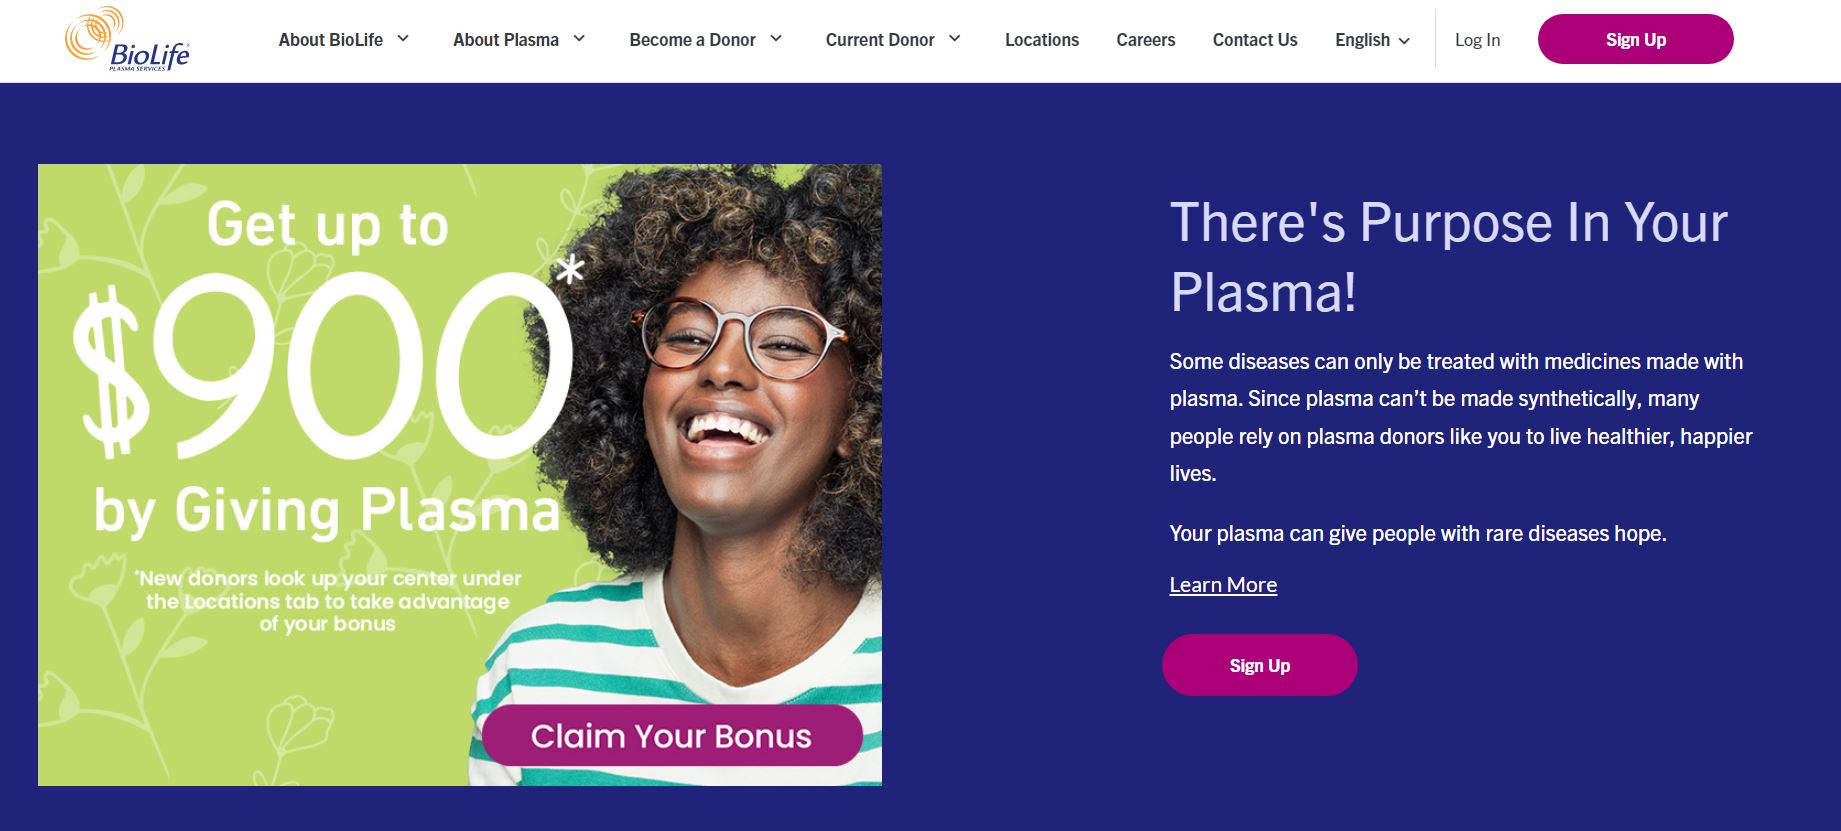 BioLife Plasma Coupons & Promotions May 2023 (1000 Bonus)